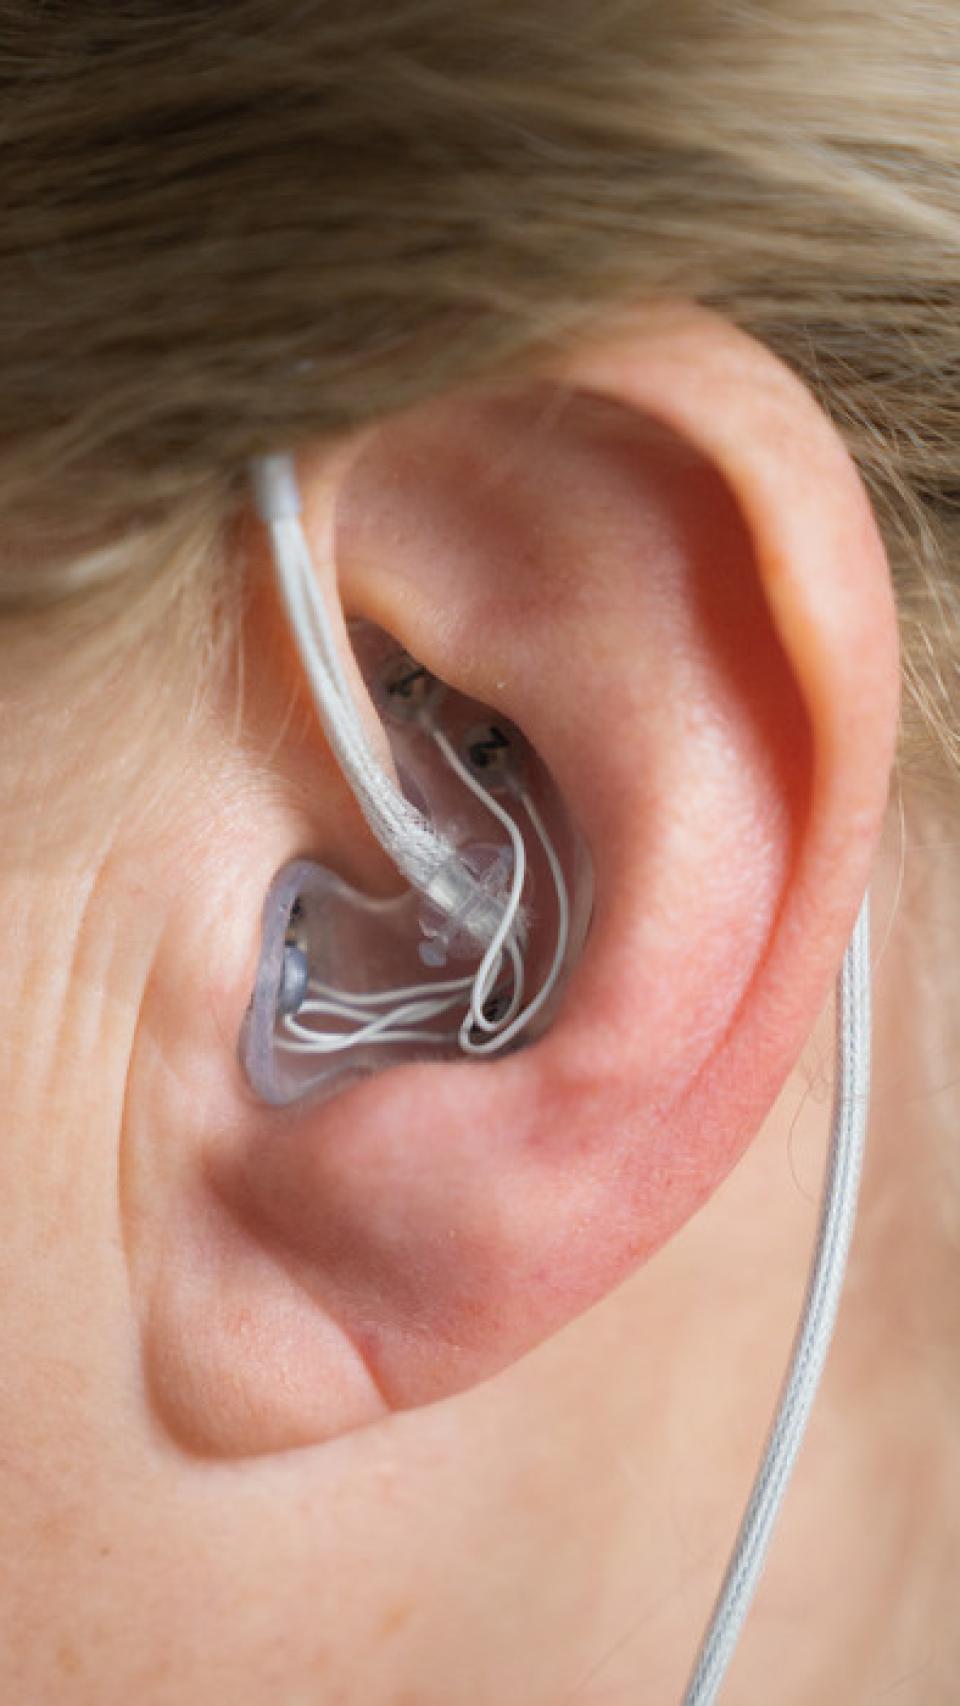 El dispositivo en una oreja de un paciente.